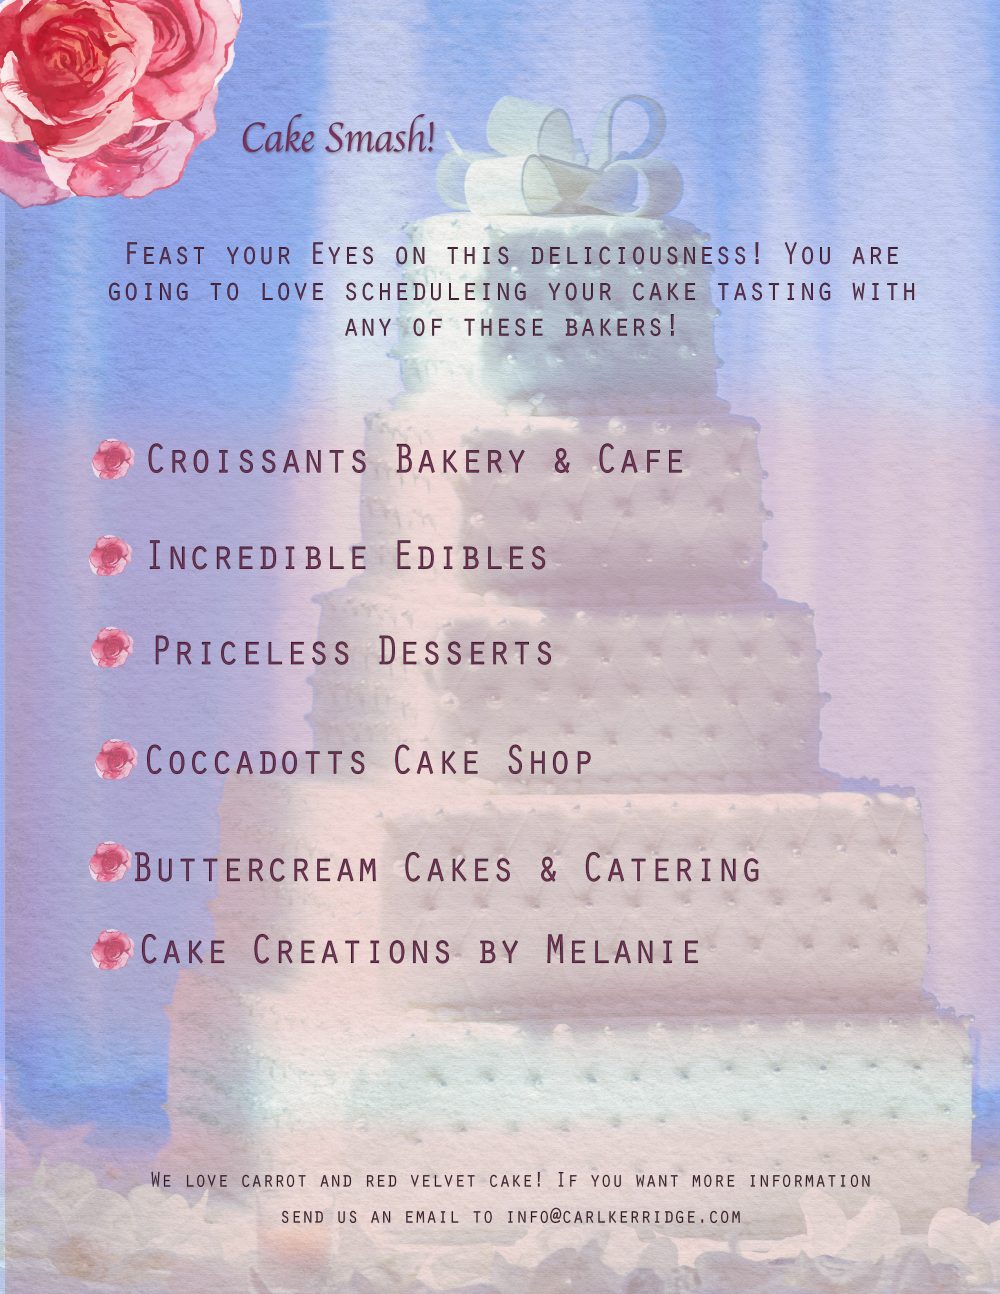 Cake Smash, wedding cake background with wedding cake vendors 